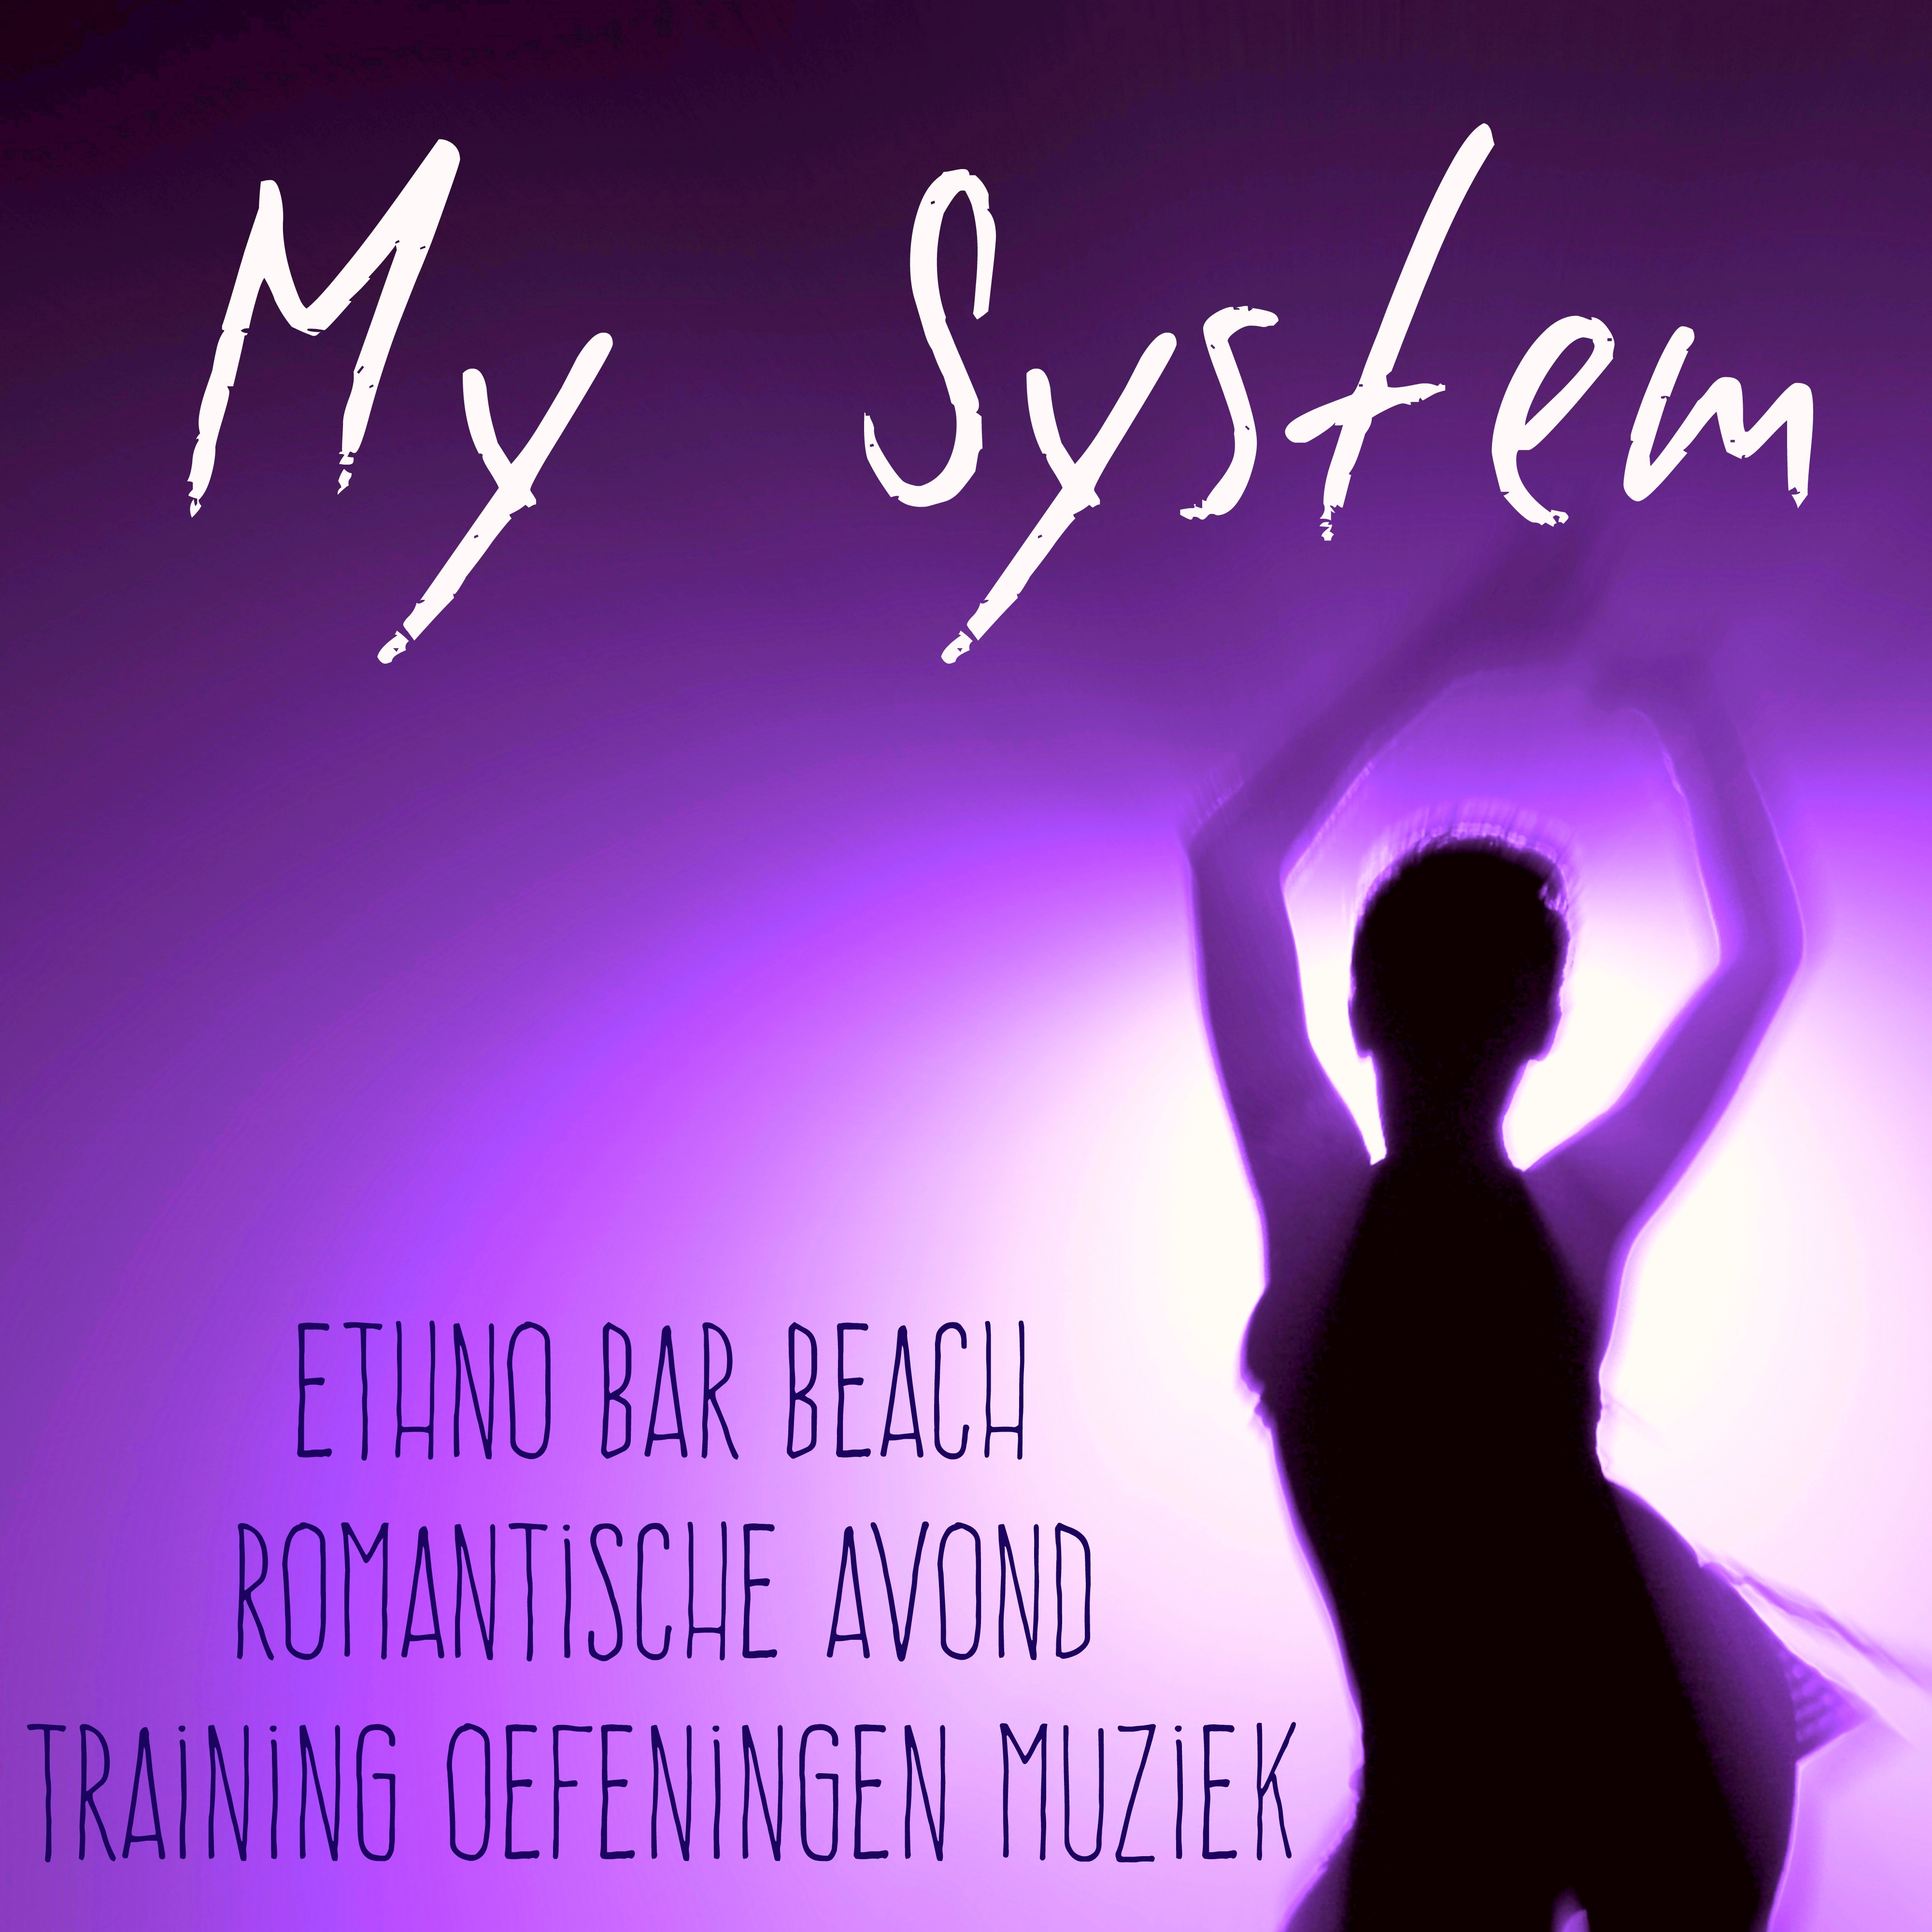 My System - Ethno Bar Beach Romantische Avond Training Oefeningen Muziek met Lounge Chill House Geluiden